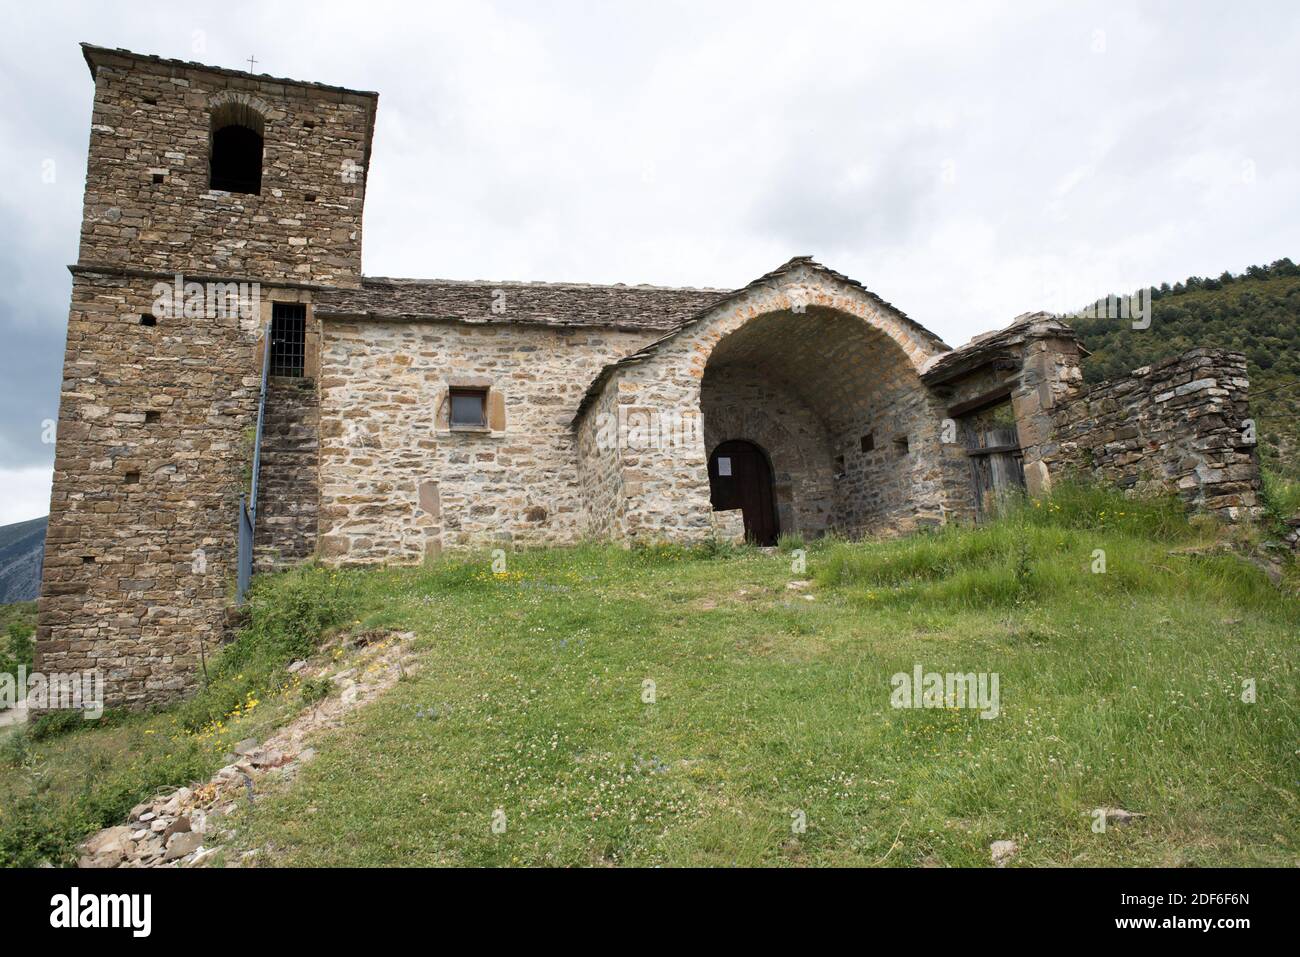 Iglesia de San Vicente Martir, Vió o Bió. Sobrarbe, provincia de Huesca, Aragón, España. Foto de stock